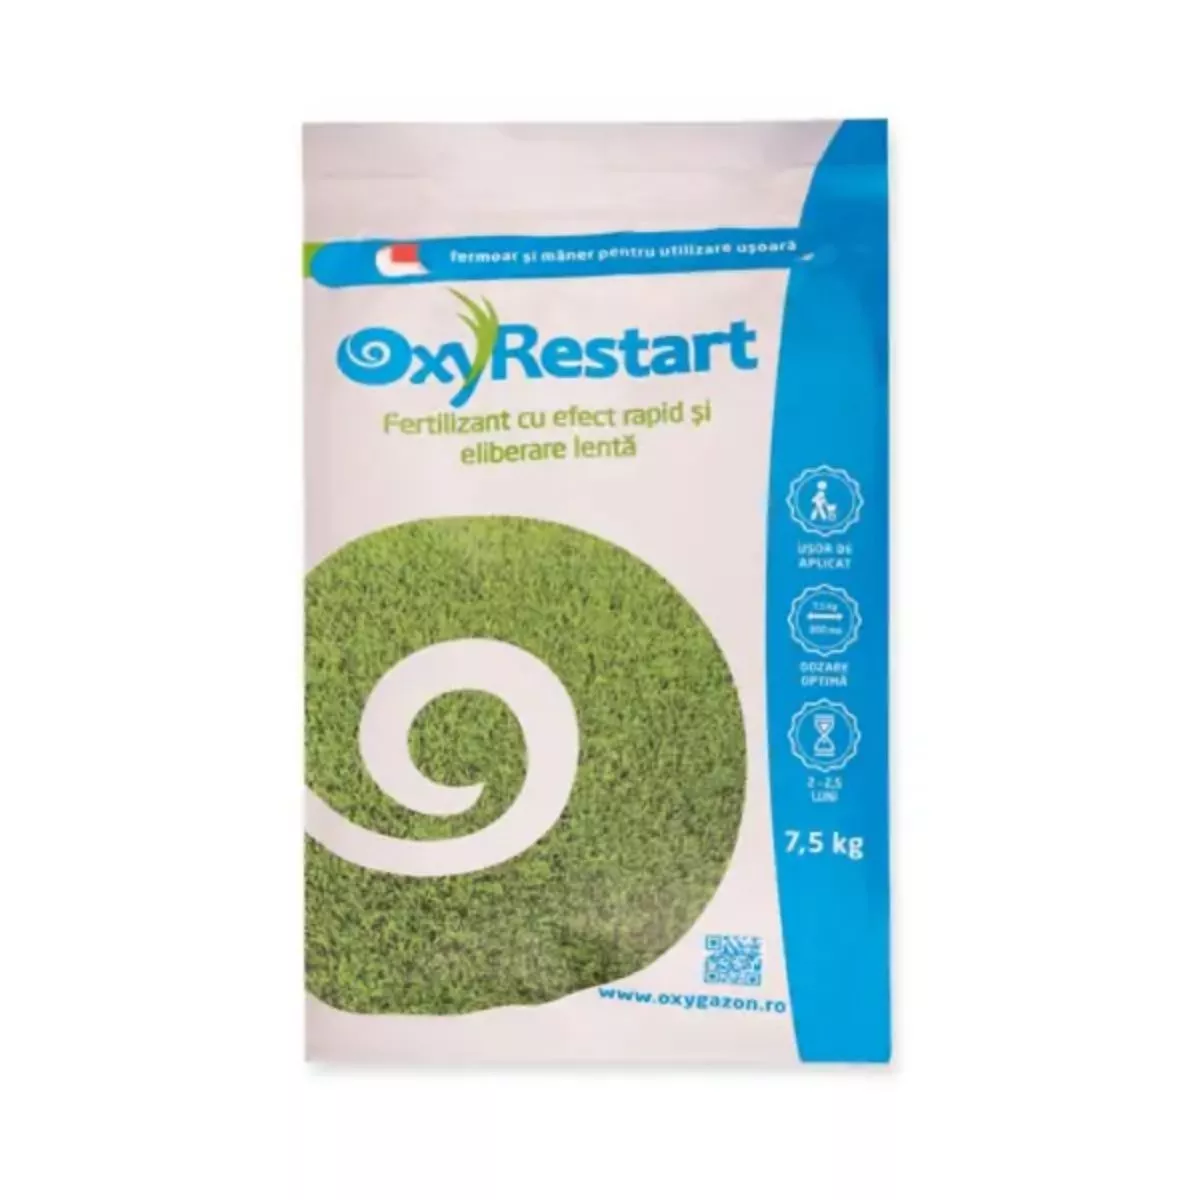 Fertilizant cu eliberare lenta Oxy Restart OxyGazon, 7,5 kilograme 1